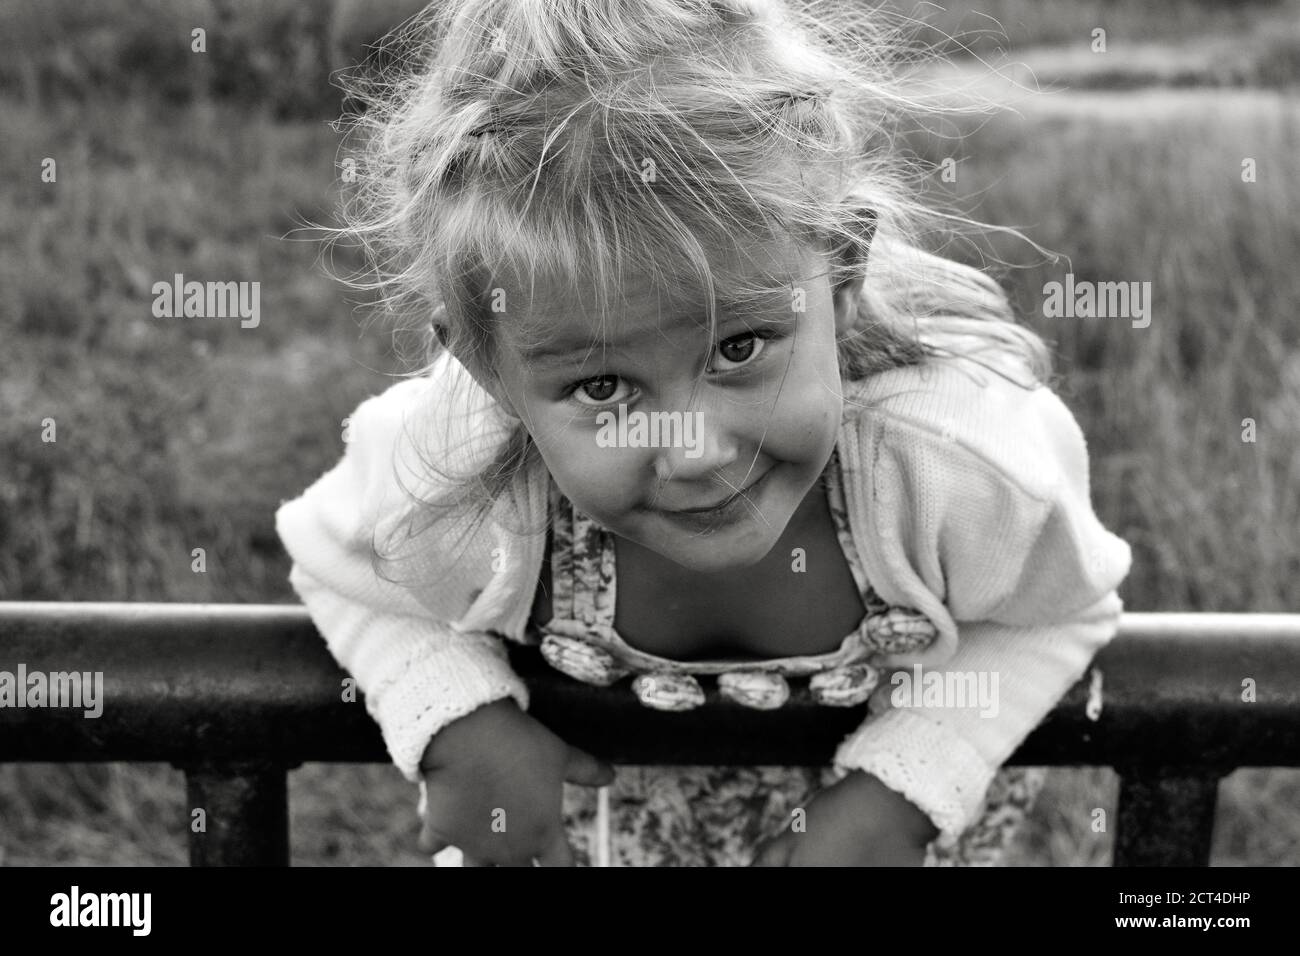 Primo piano ritratto bianco e nero di carino adorabile sorridente bambino caucasico. Ritratto di un bambino felice in natura. Concetto di infanzia felice. Il bambino Foto Stock